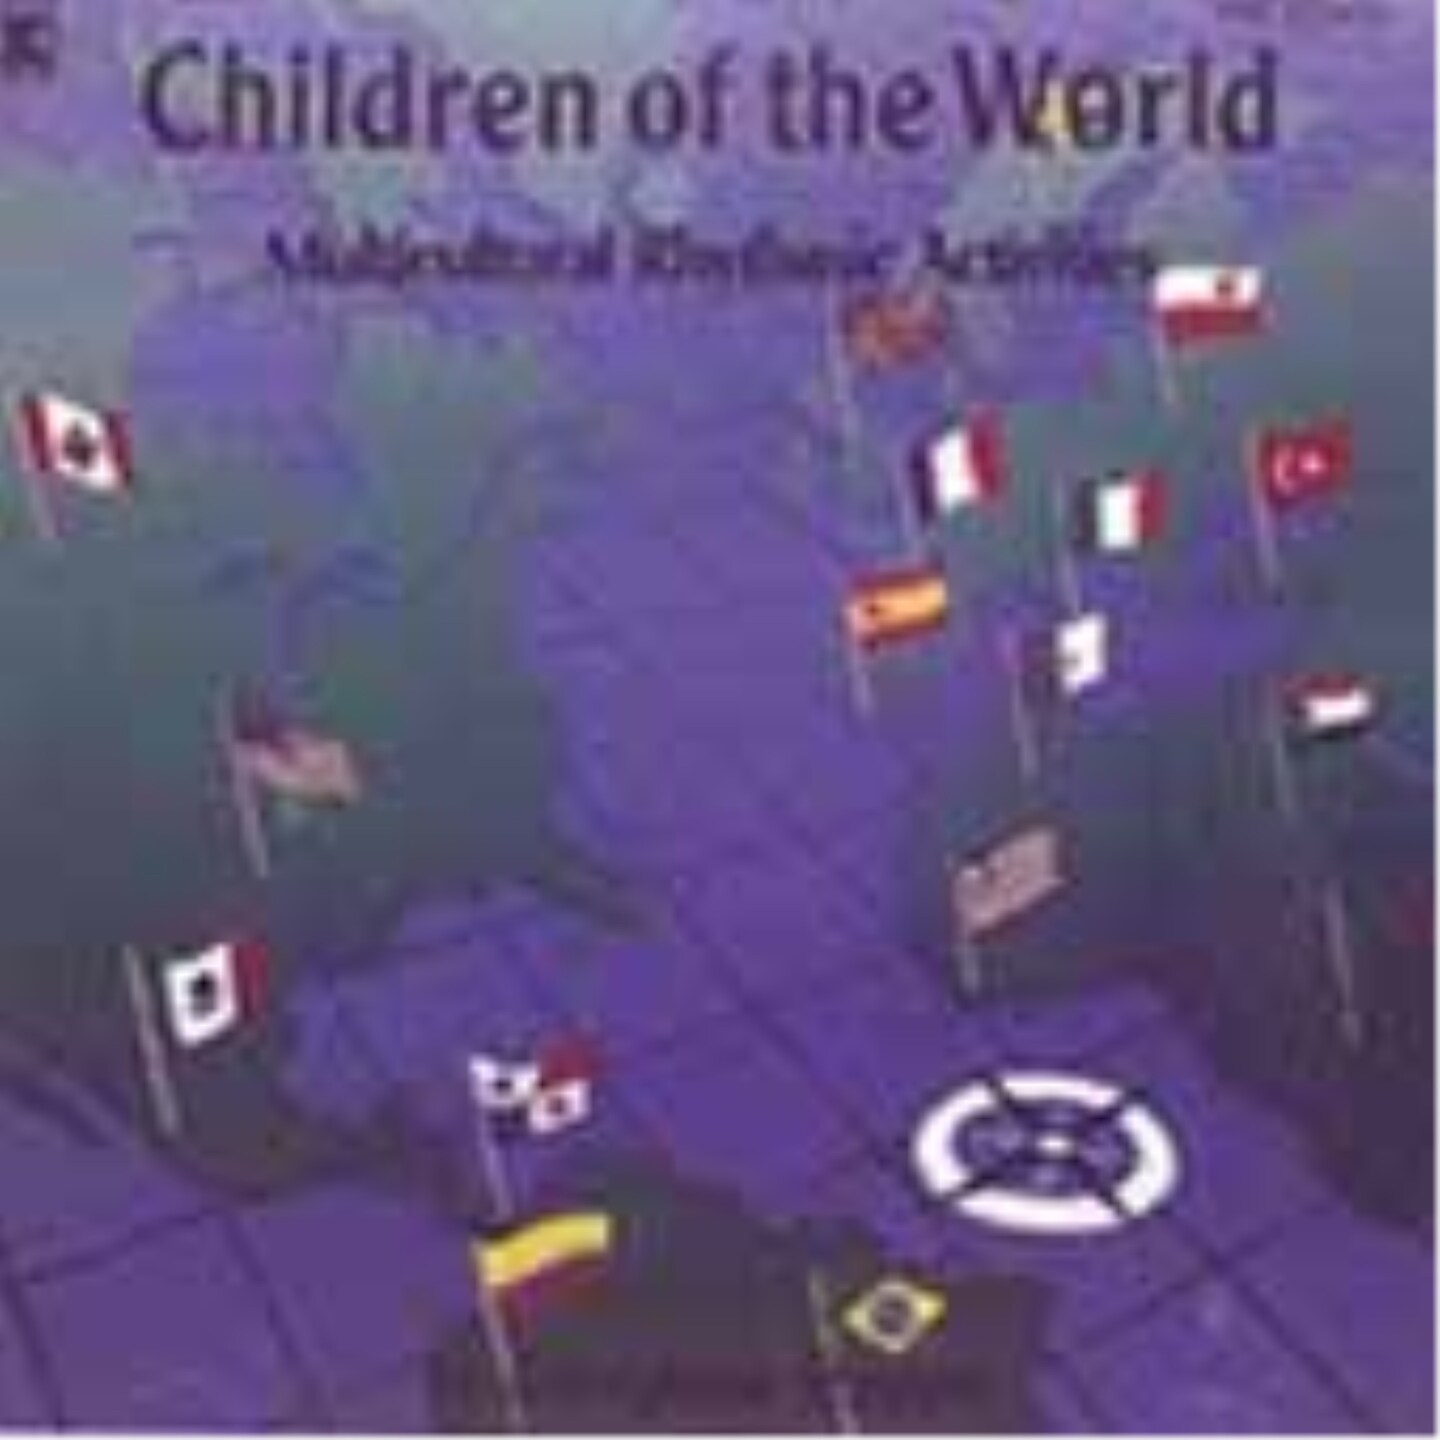 Children of the World Educational CD